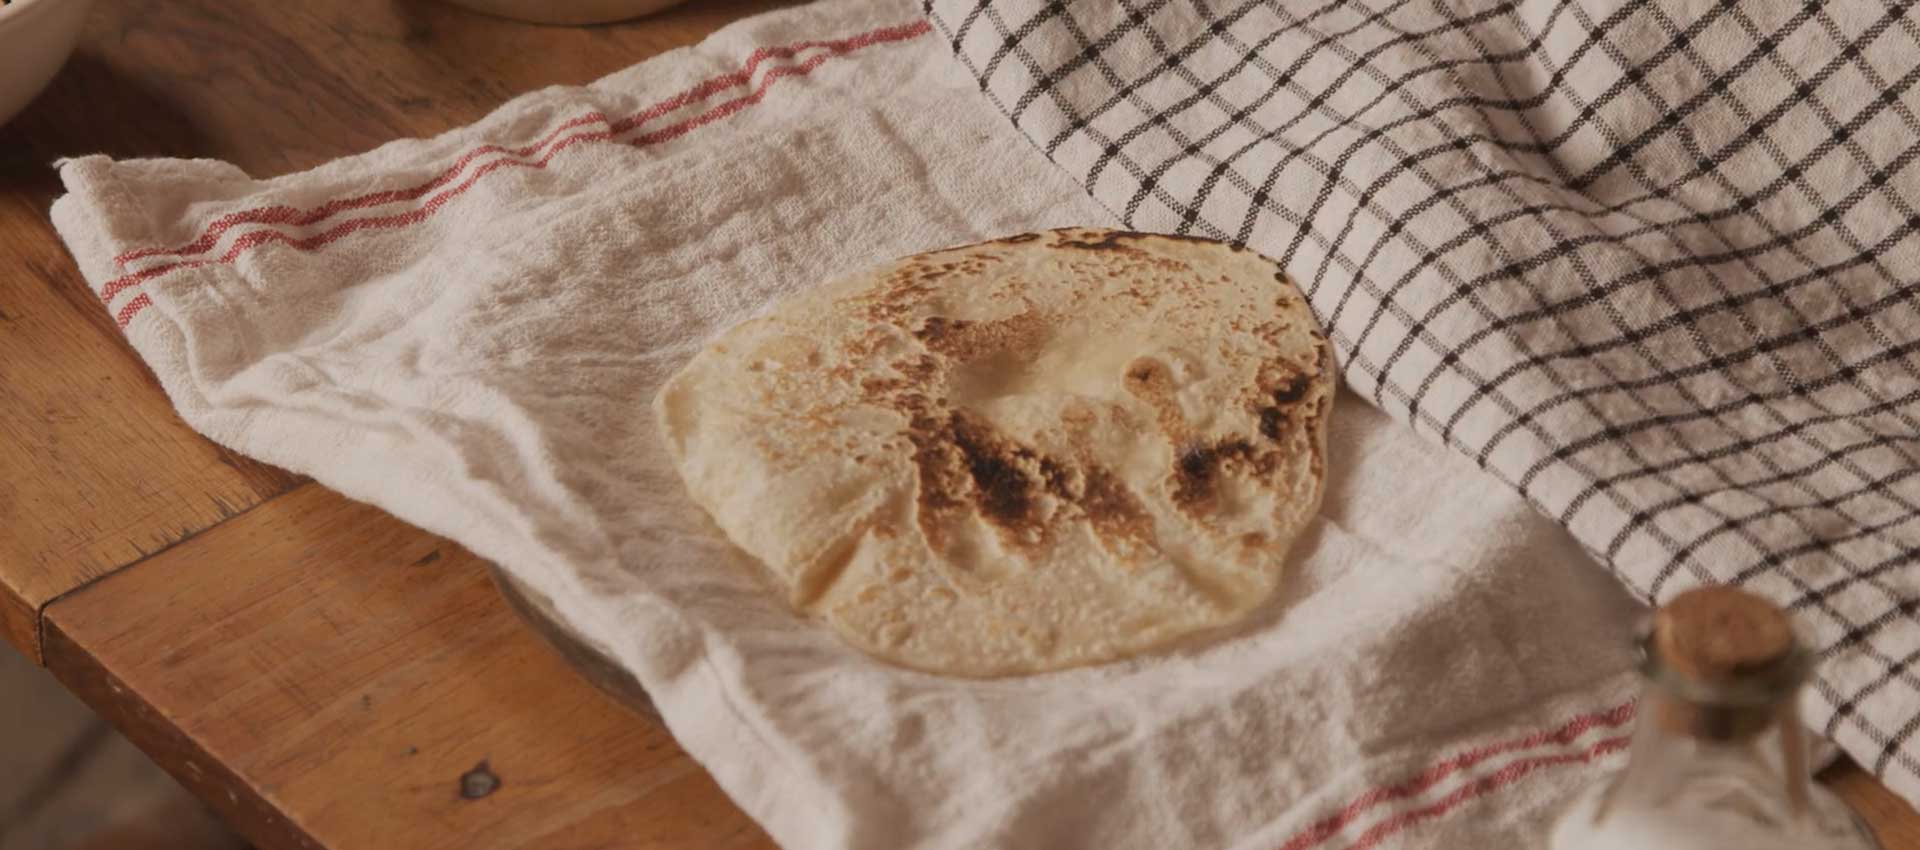 homemade-tortillas-atasteofhistory.org